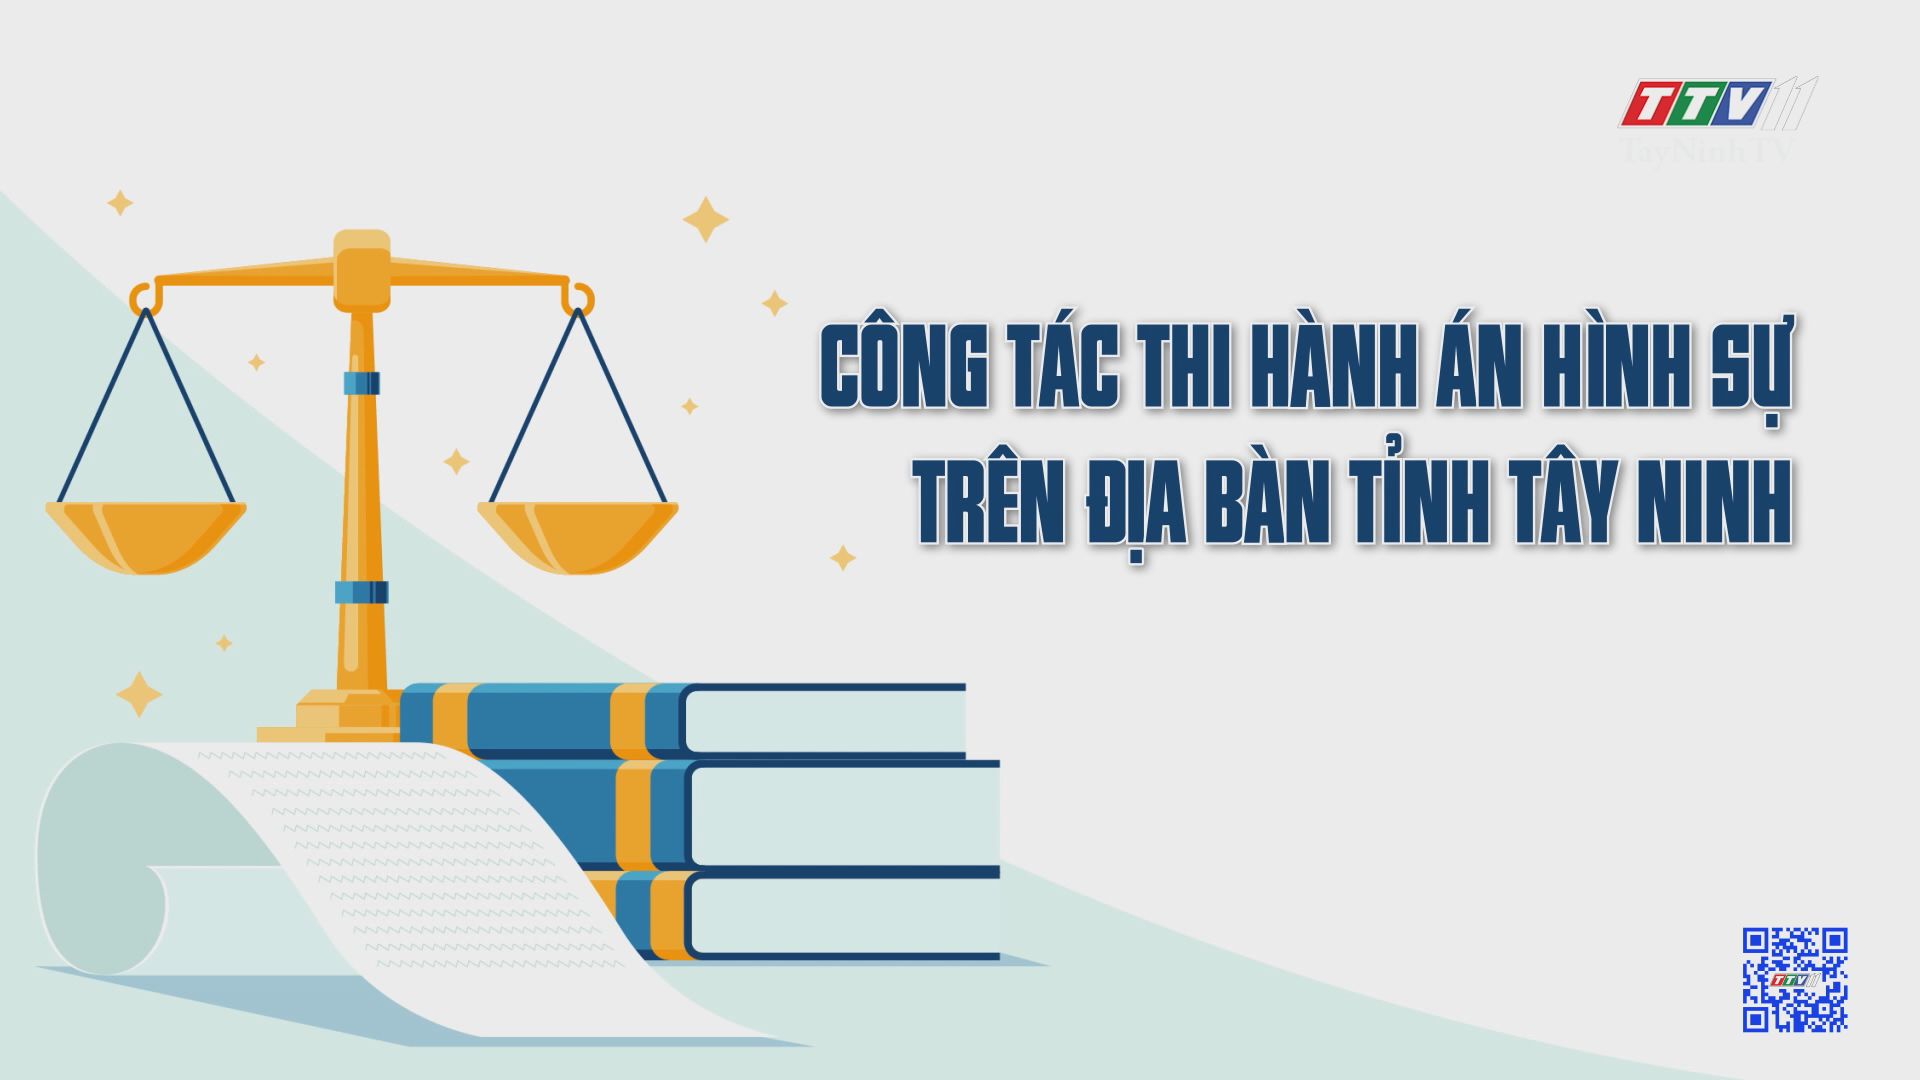 Công tác thi hành án hình sự trên địa bàn tỉnh Tây Ninh | Tiếng nói cử tri | TayNinhTV